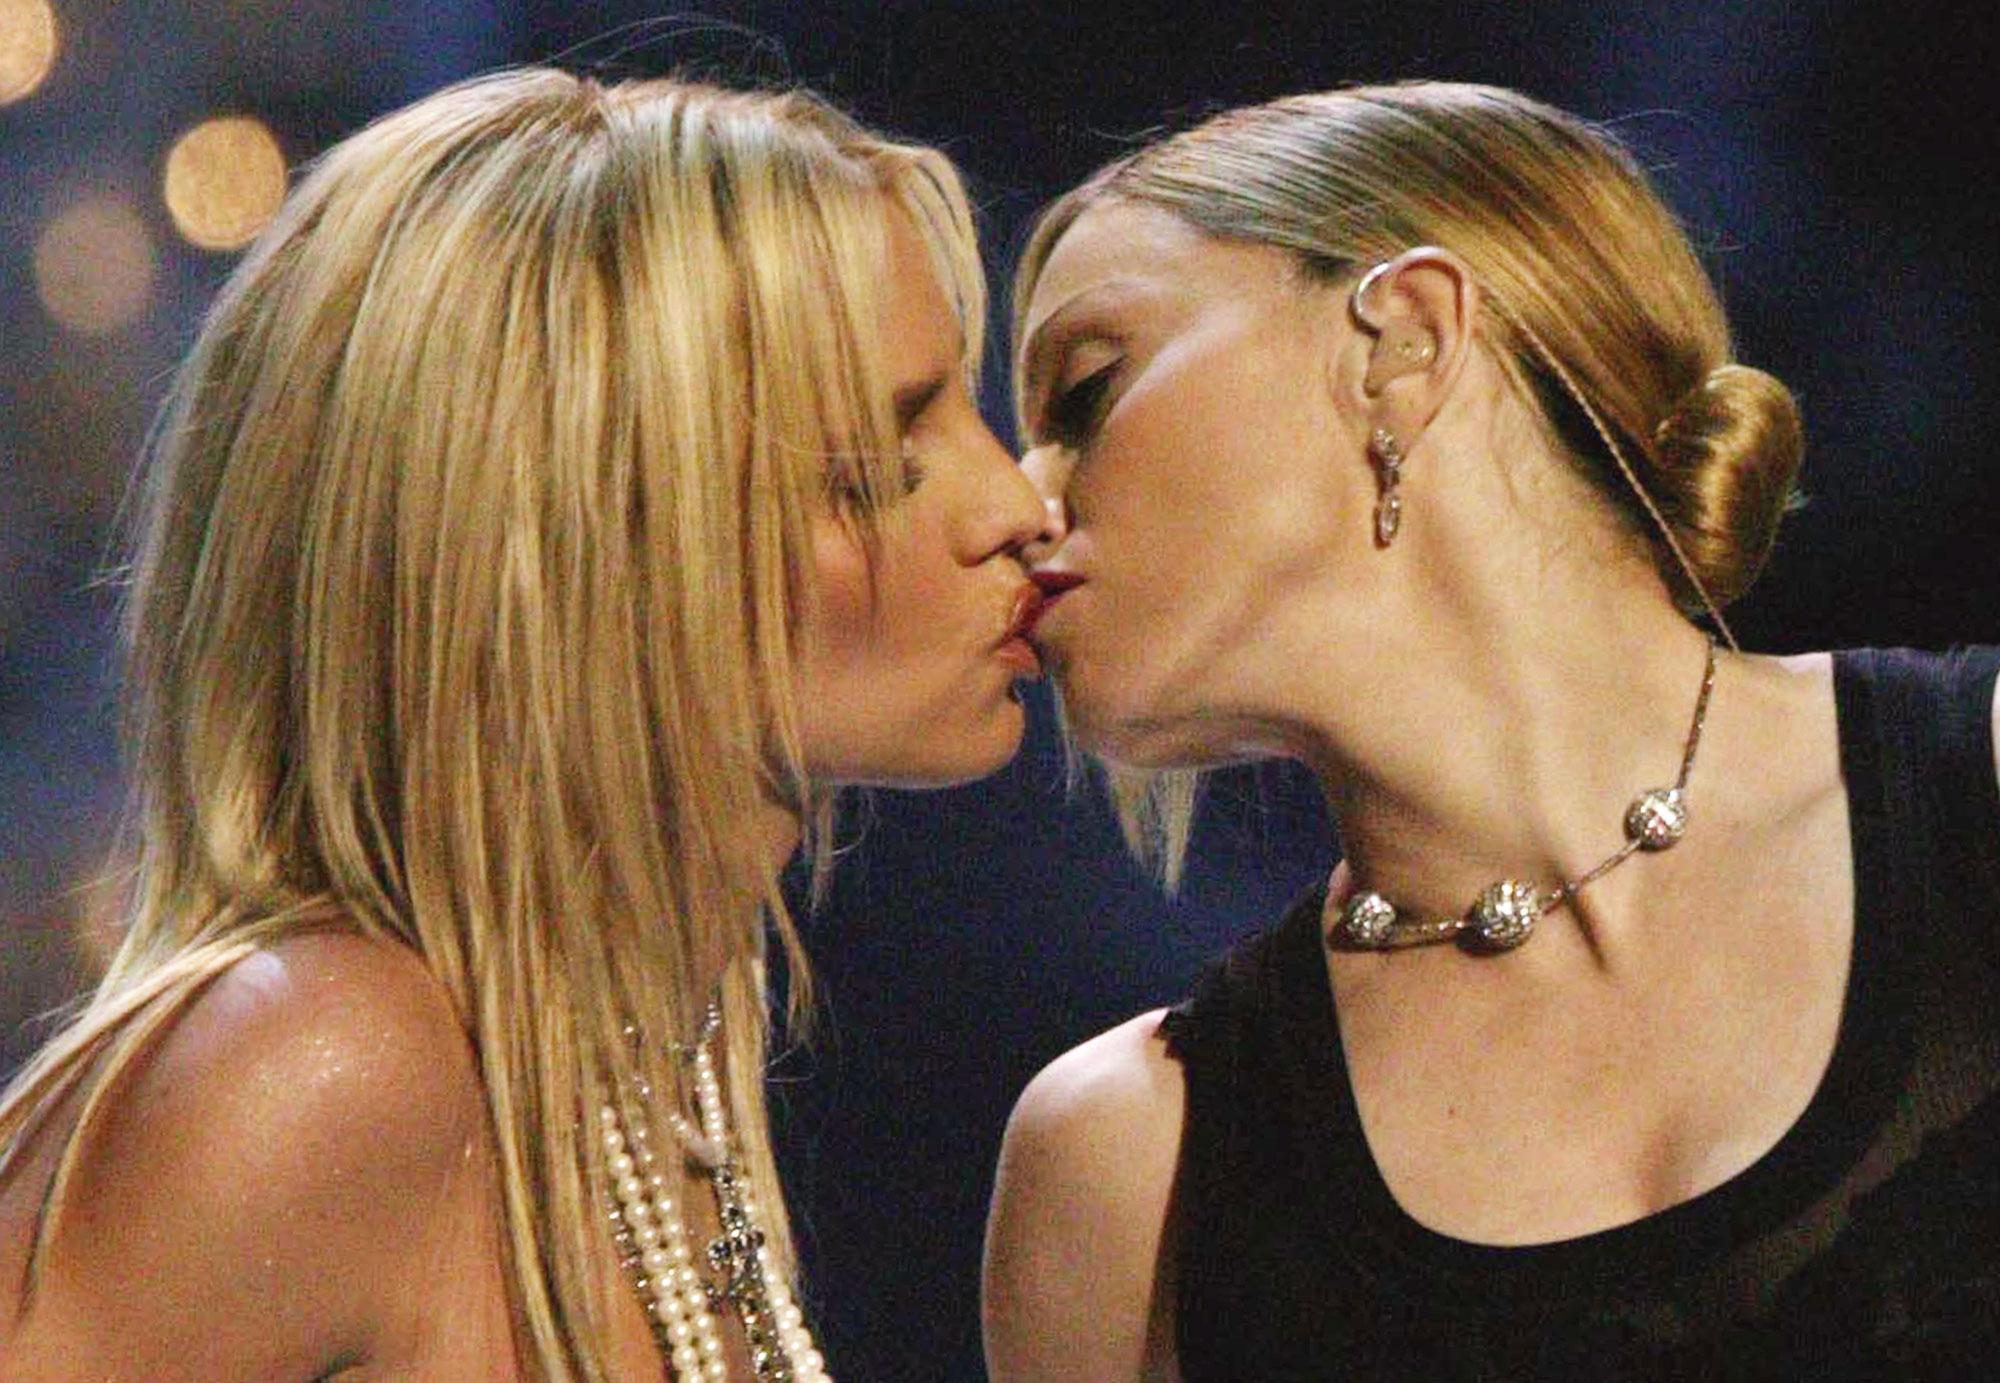 28 août 2003, Madonna embrasse Britney Spears sur scène lors des MTV Video Music Awards. [AFP - Dave Hogan]